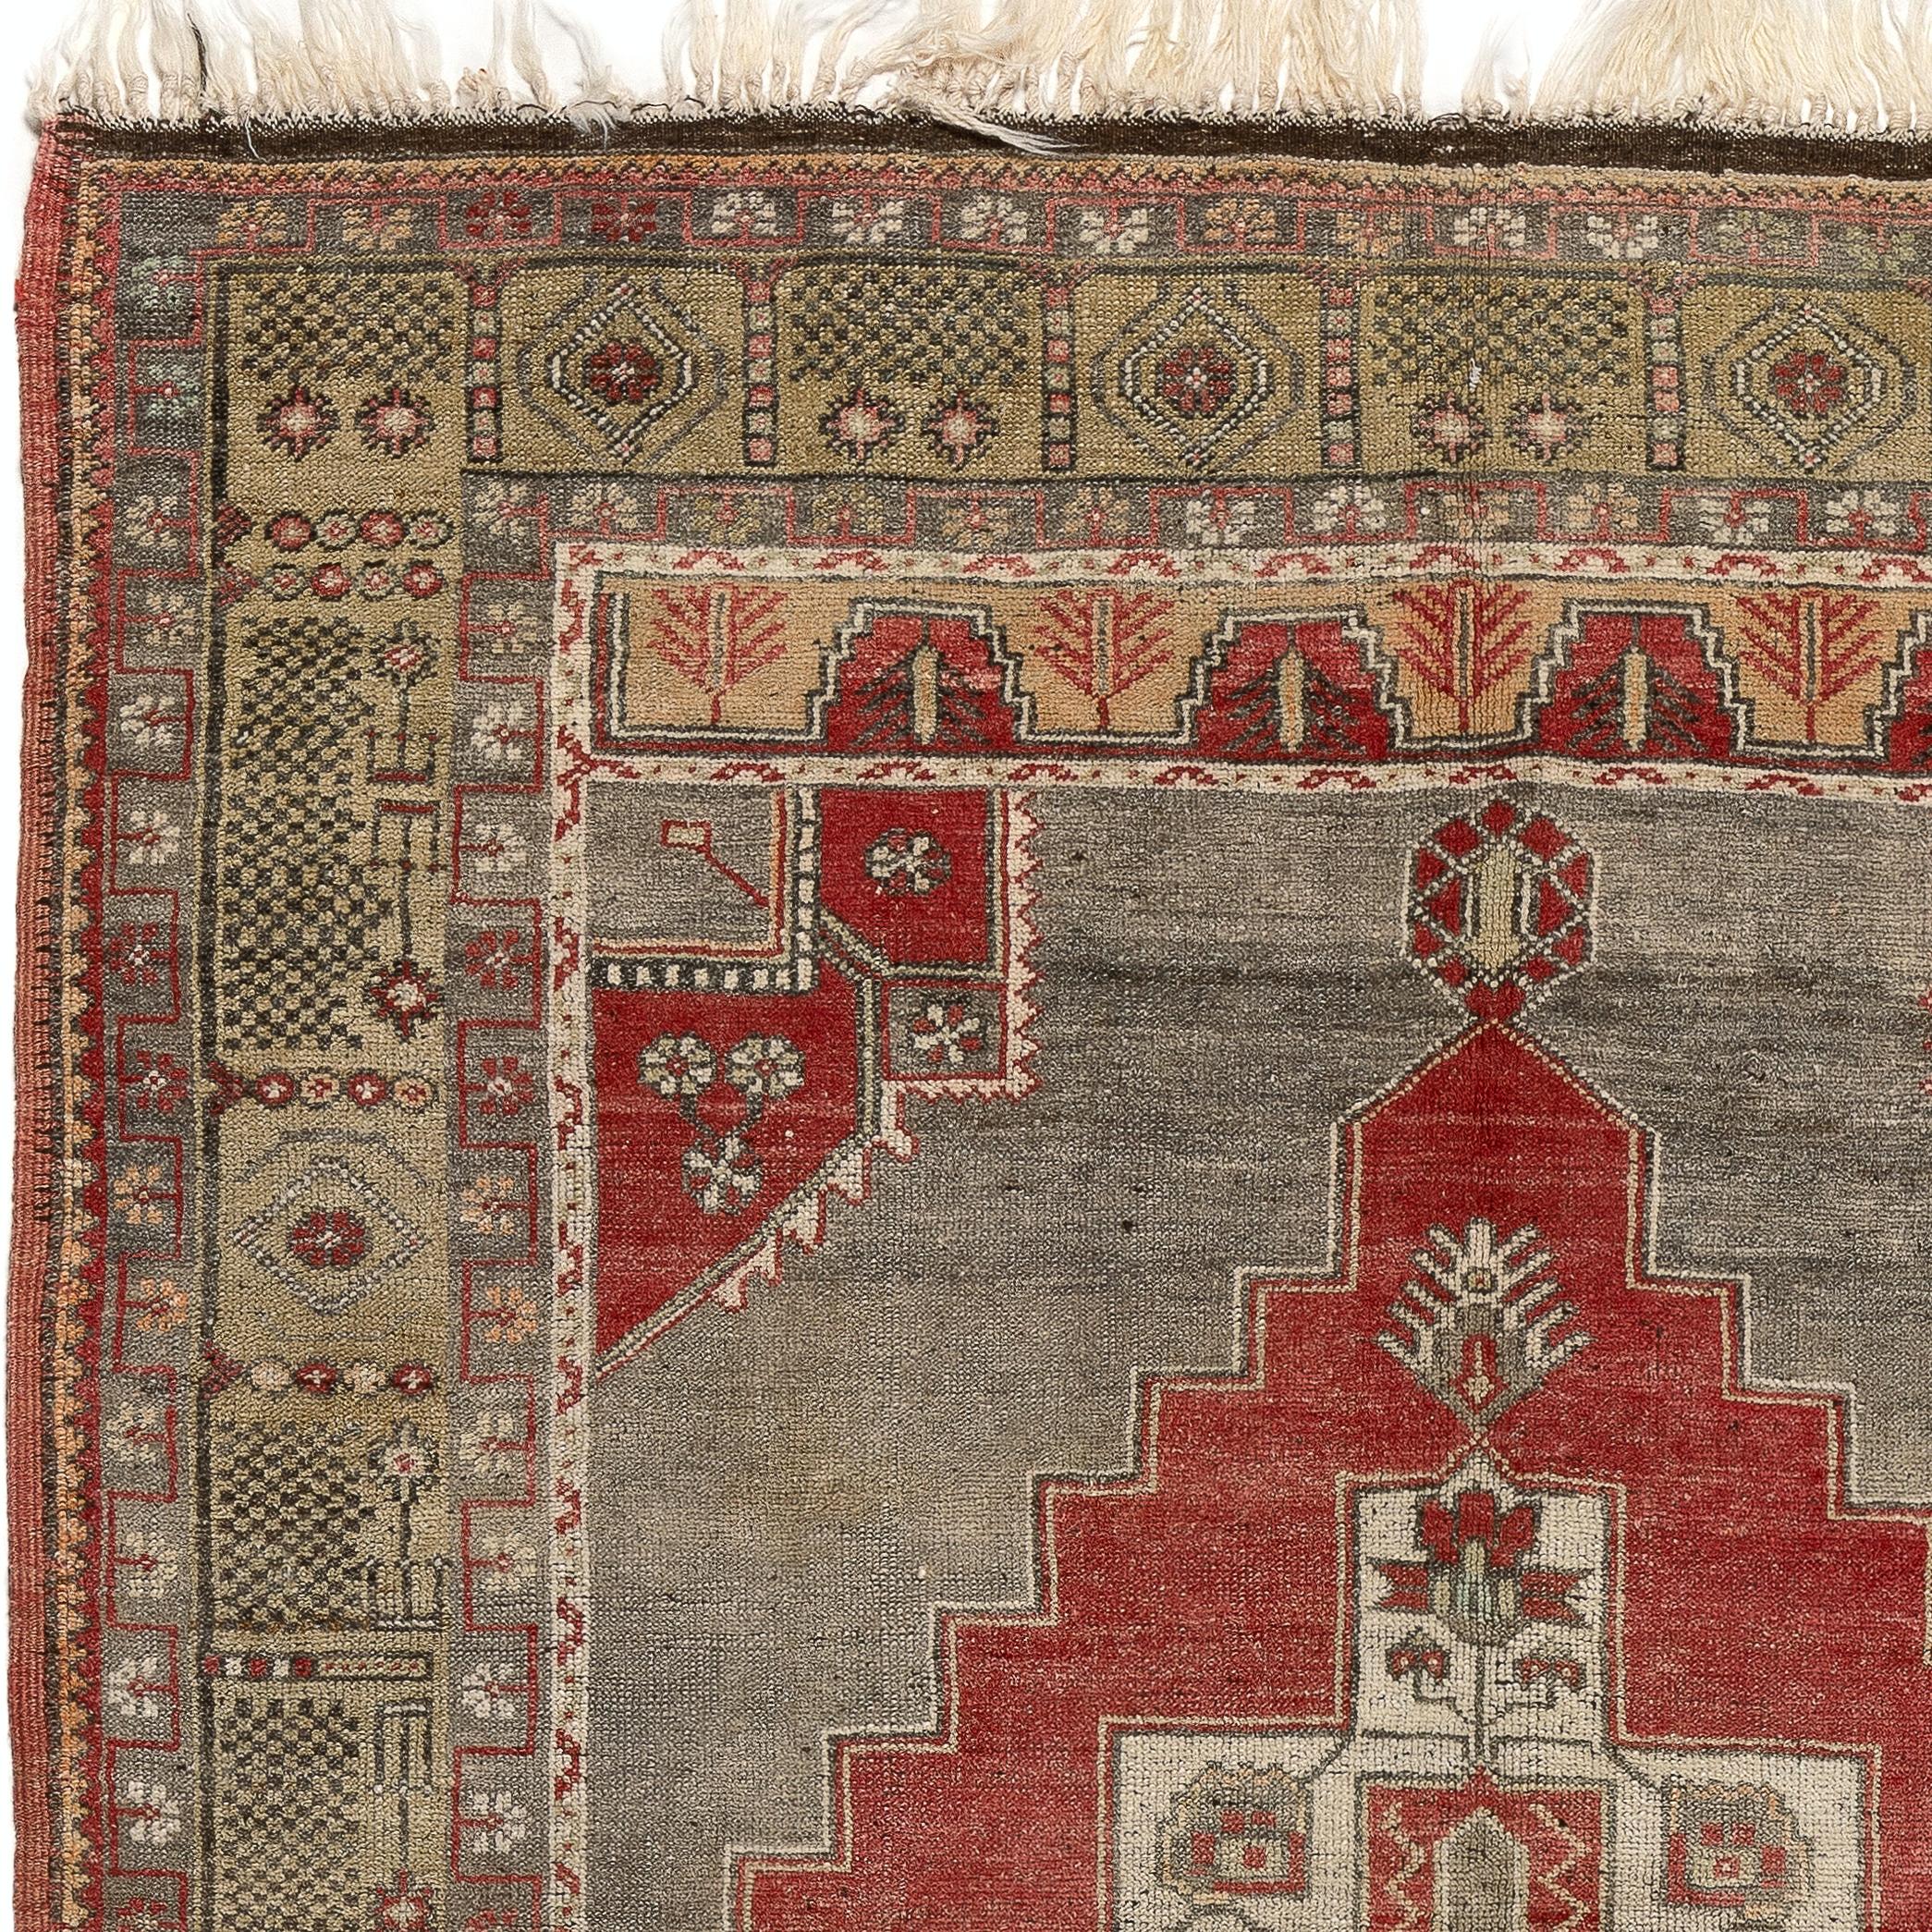 Tapis turc vintage des années 1950, finement noué à la main, présentant un motif de médaillon géométrique. Le tapis est fait de poils de laine moyens sur une base de laine. Il est lourd et repose à plat sur le sol, en très bon état et sans problème.